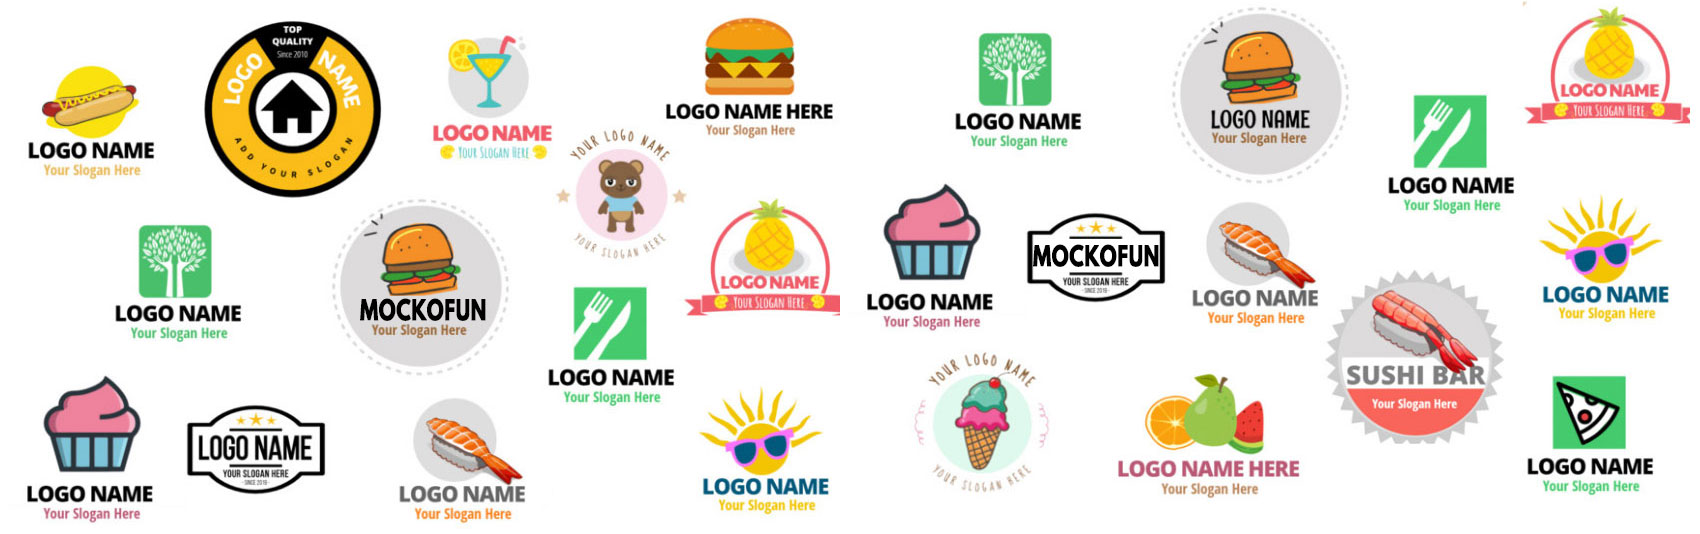 Online Logos